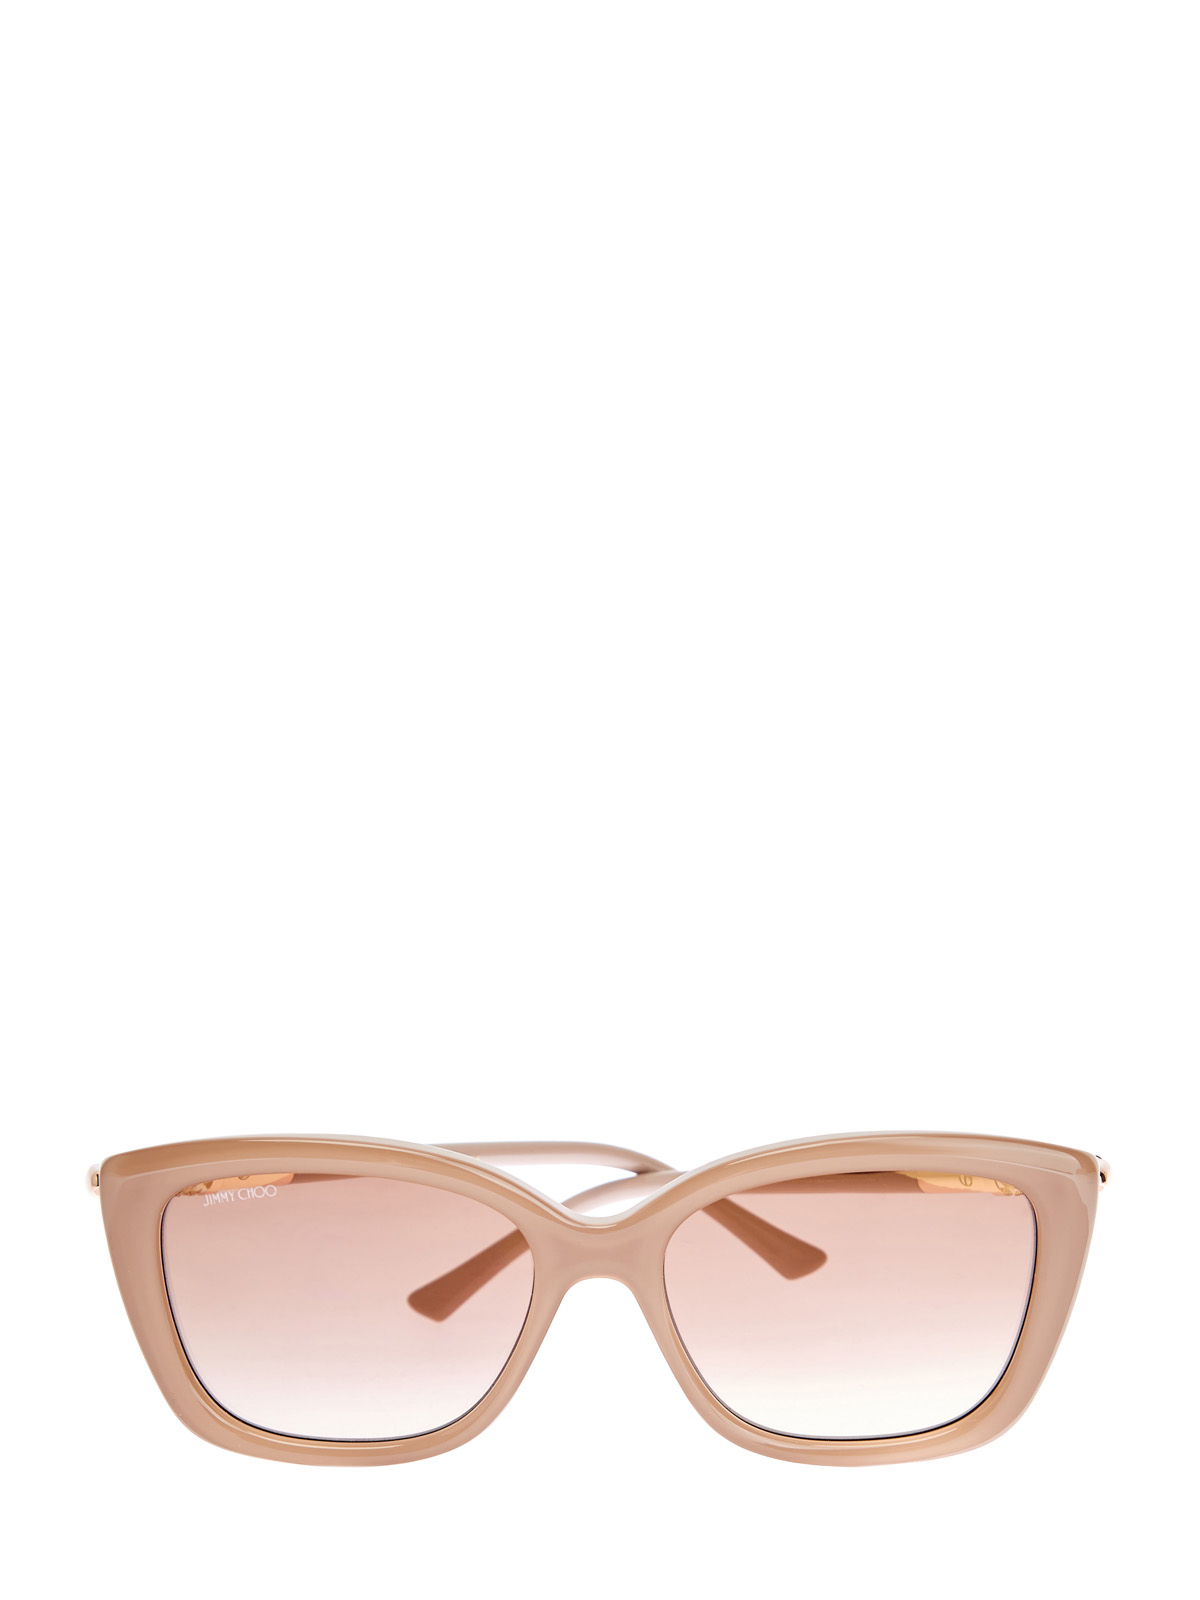 Солнцезащитные очки Adahs с мерцающей отделкой JIMMY CHOO  (sunglasses), цвет бежевый, размер S;M;L